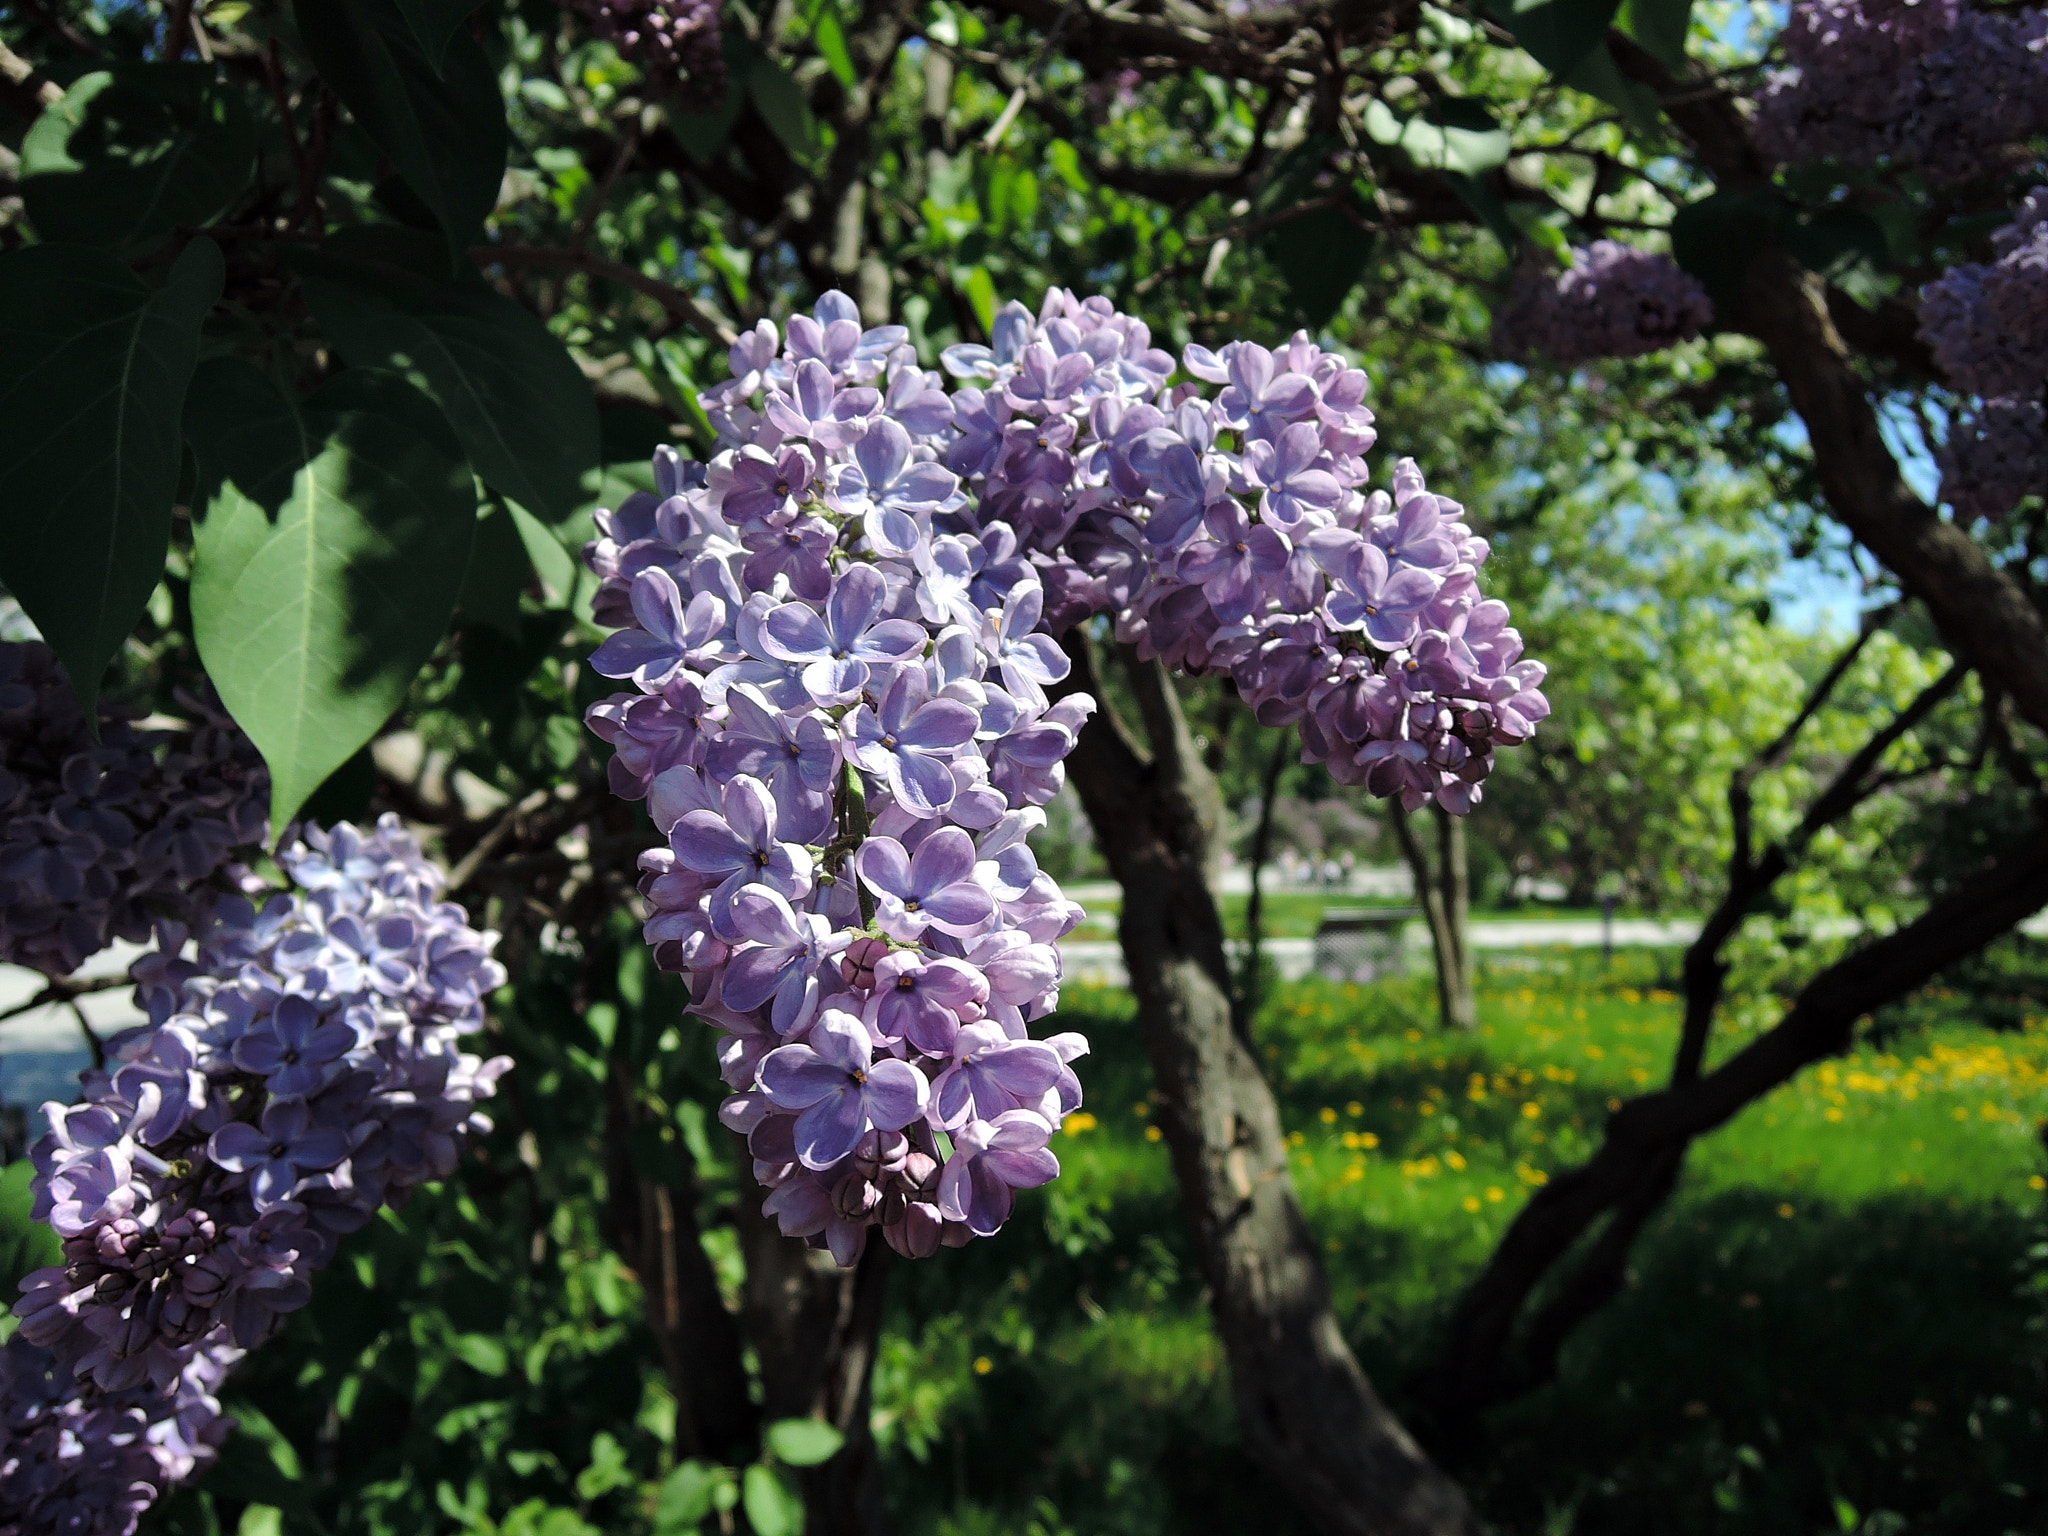 Nikon Coolpix P340 sample photo. Lilac garden photography